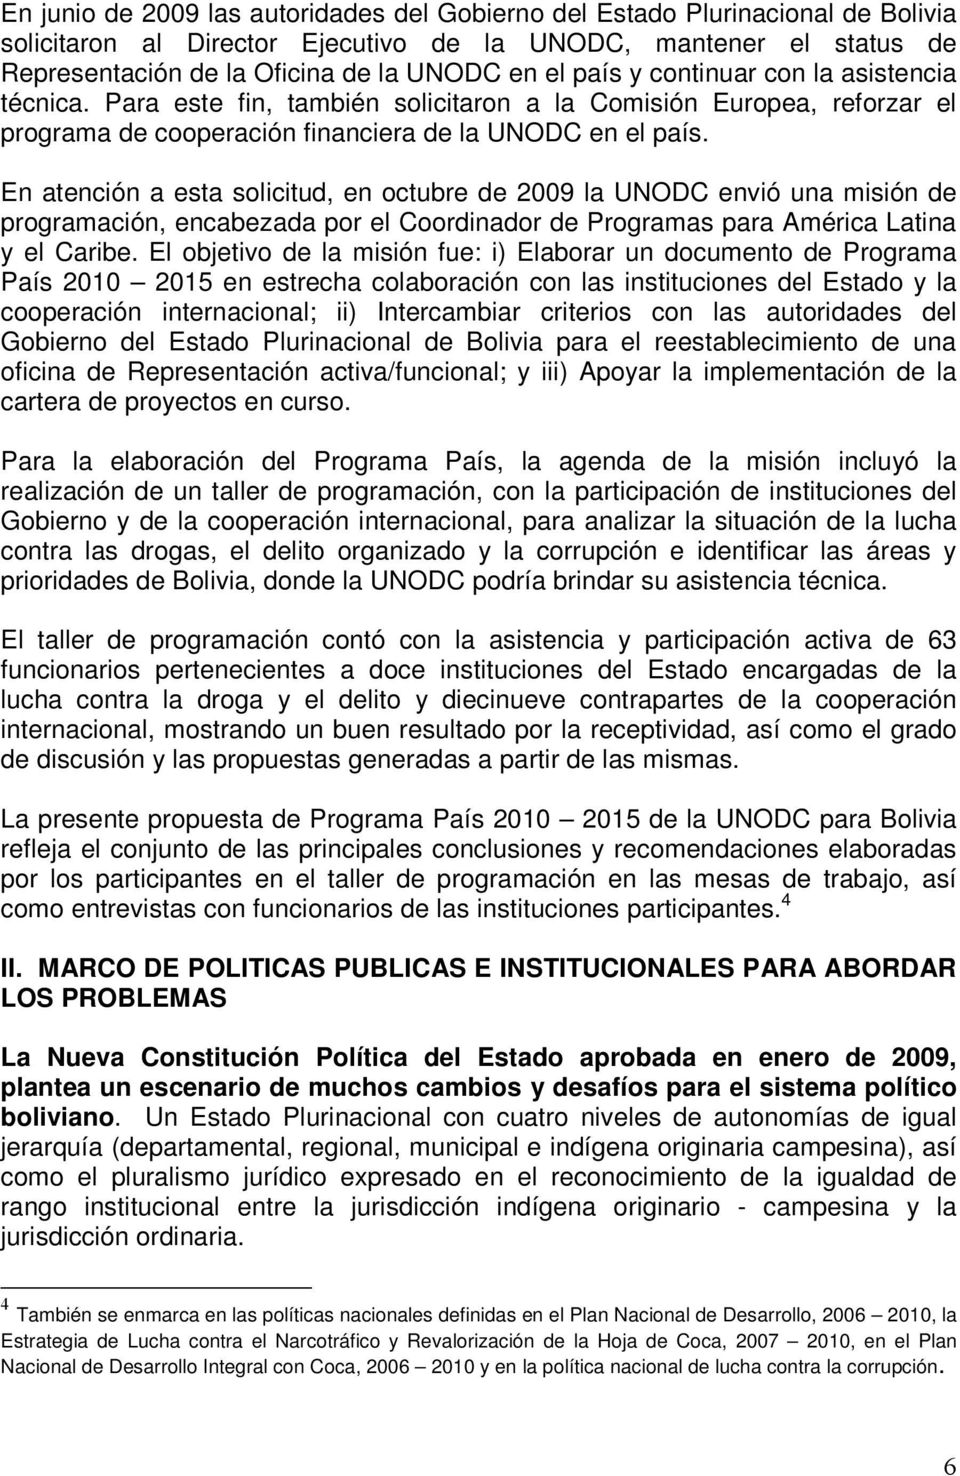 En atención a esta solicitud, en octubre de 2009 la UNODC envió una misión de programación, encabezada por el Coordinador de Programas para América Latina y el Caribe.